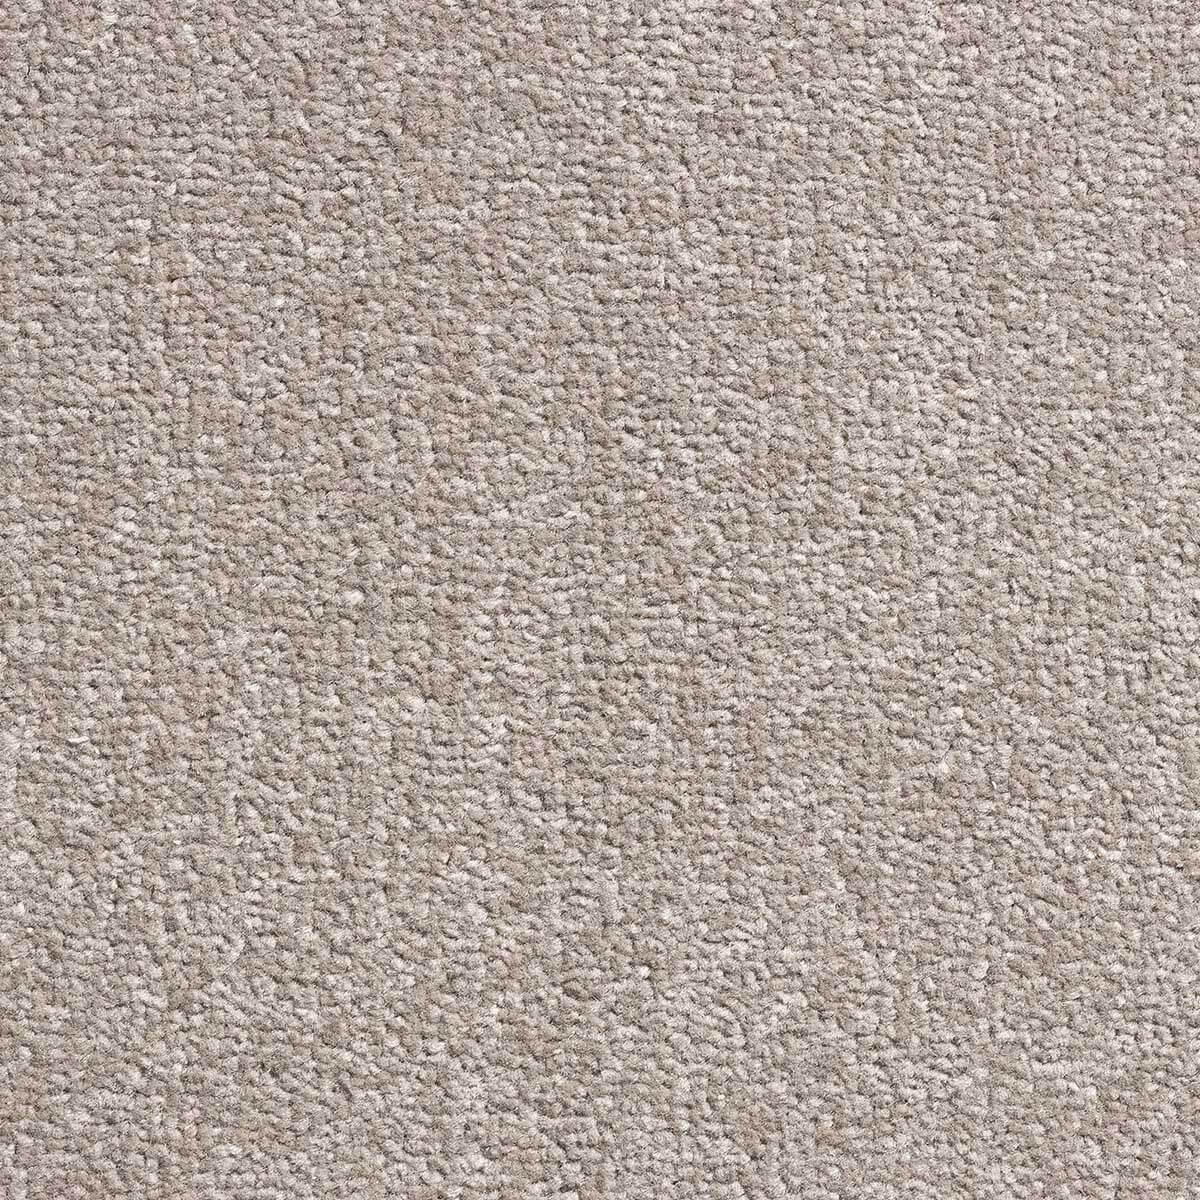 Pret a Porter Twist Carpet - 593 Shitake